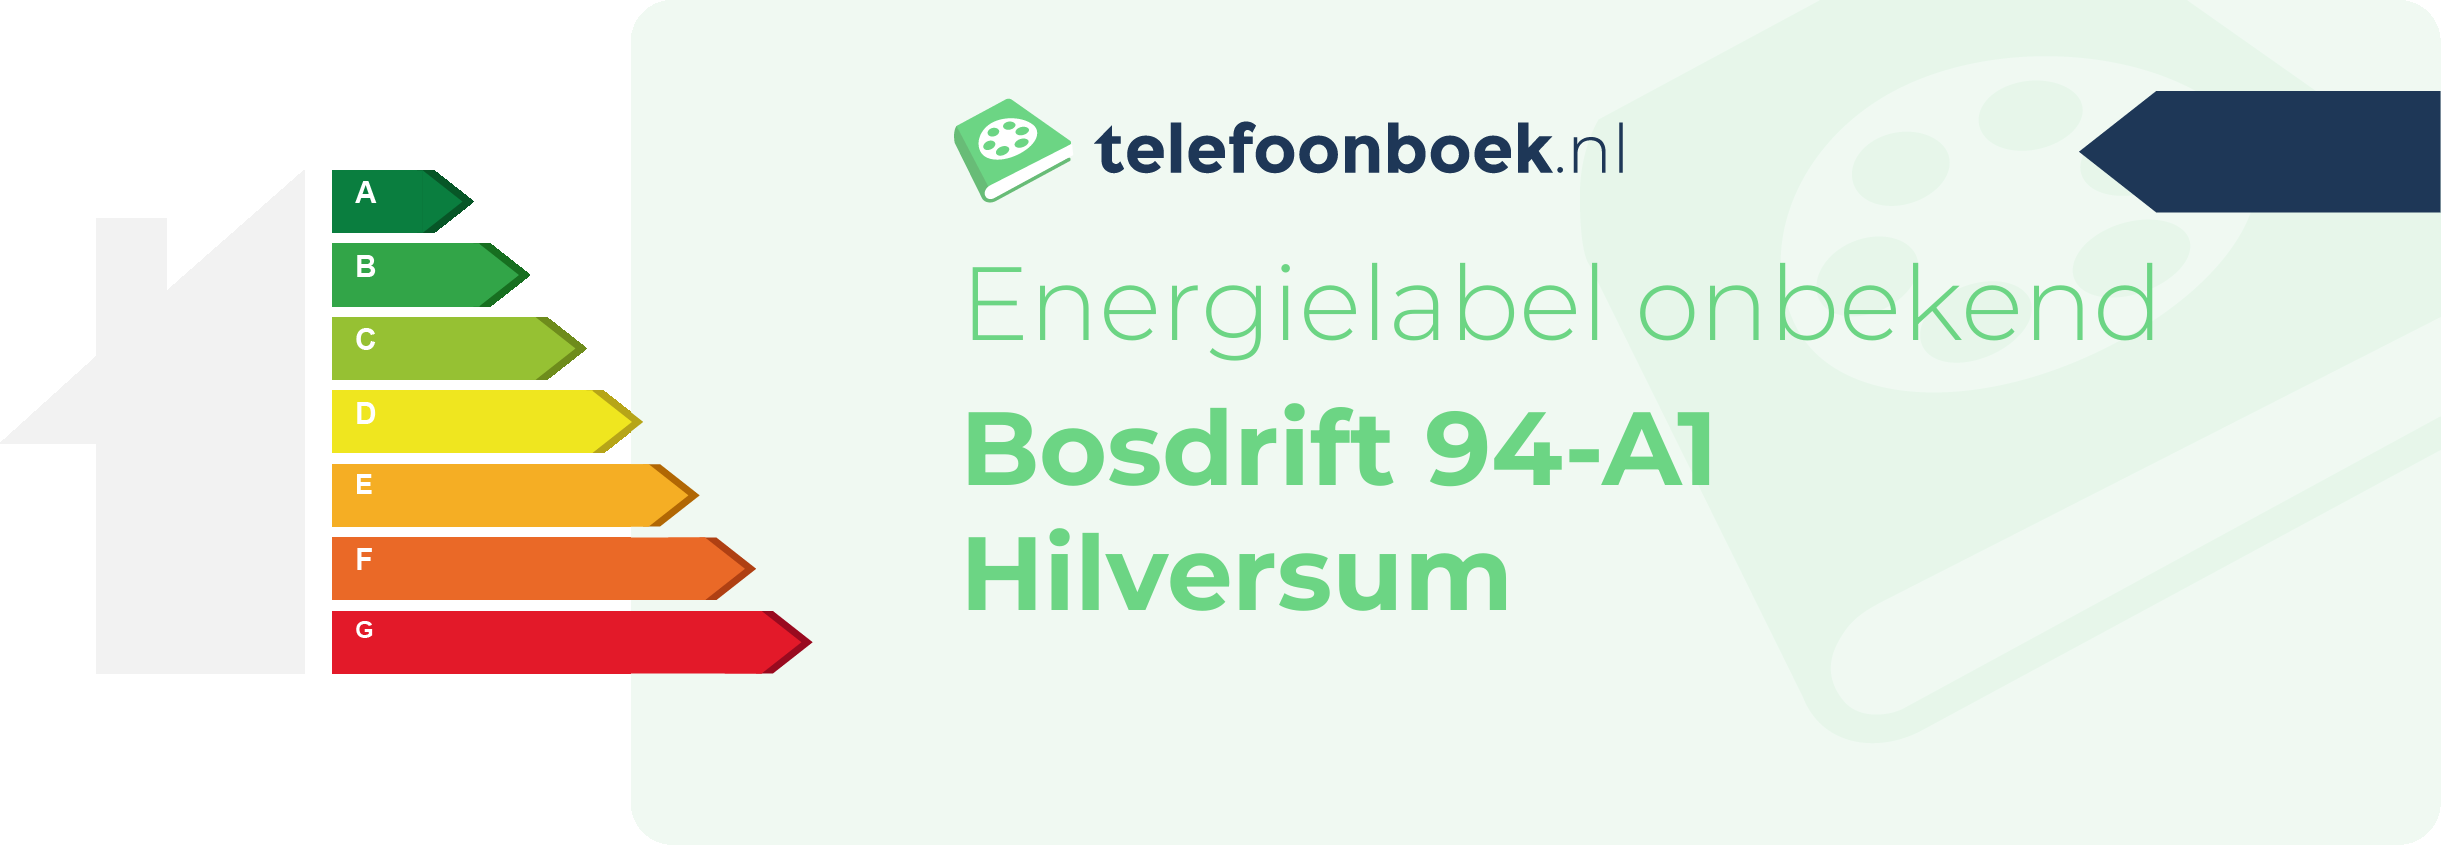 Energielabel Bosdrift 94-A1 Hilversum